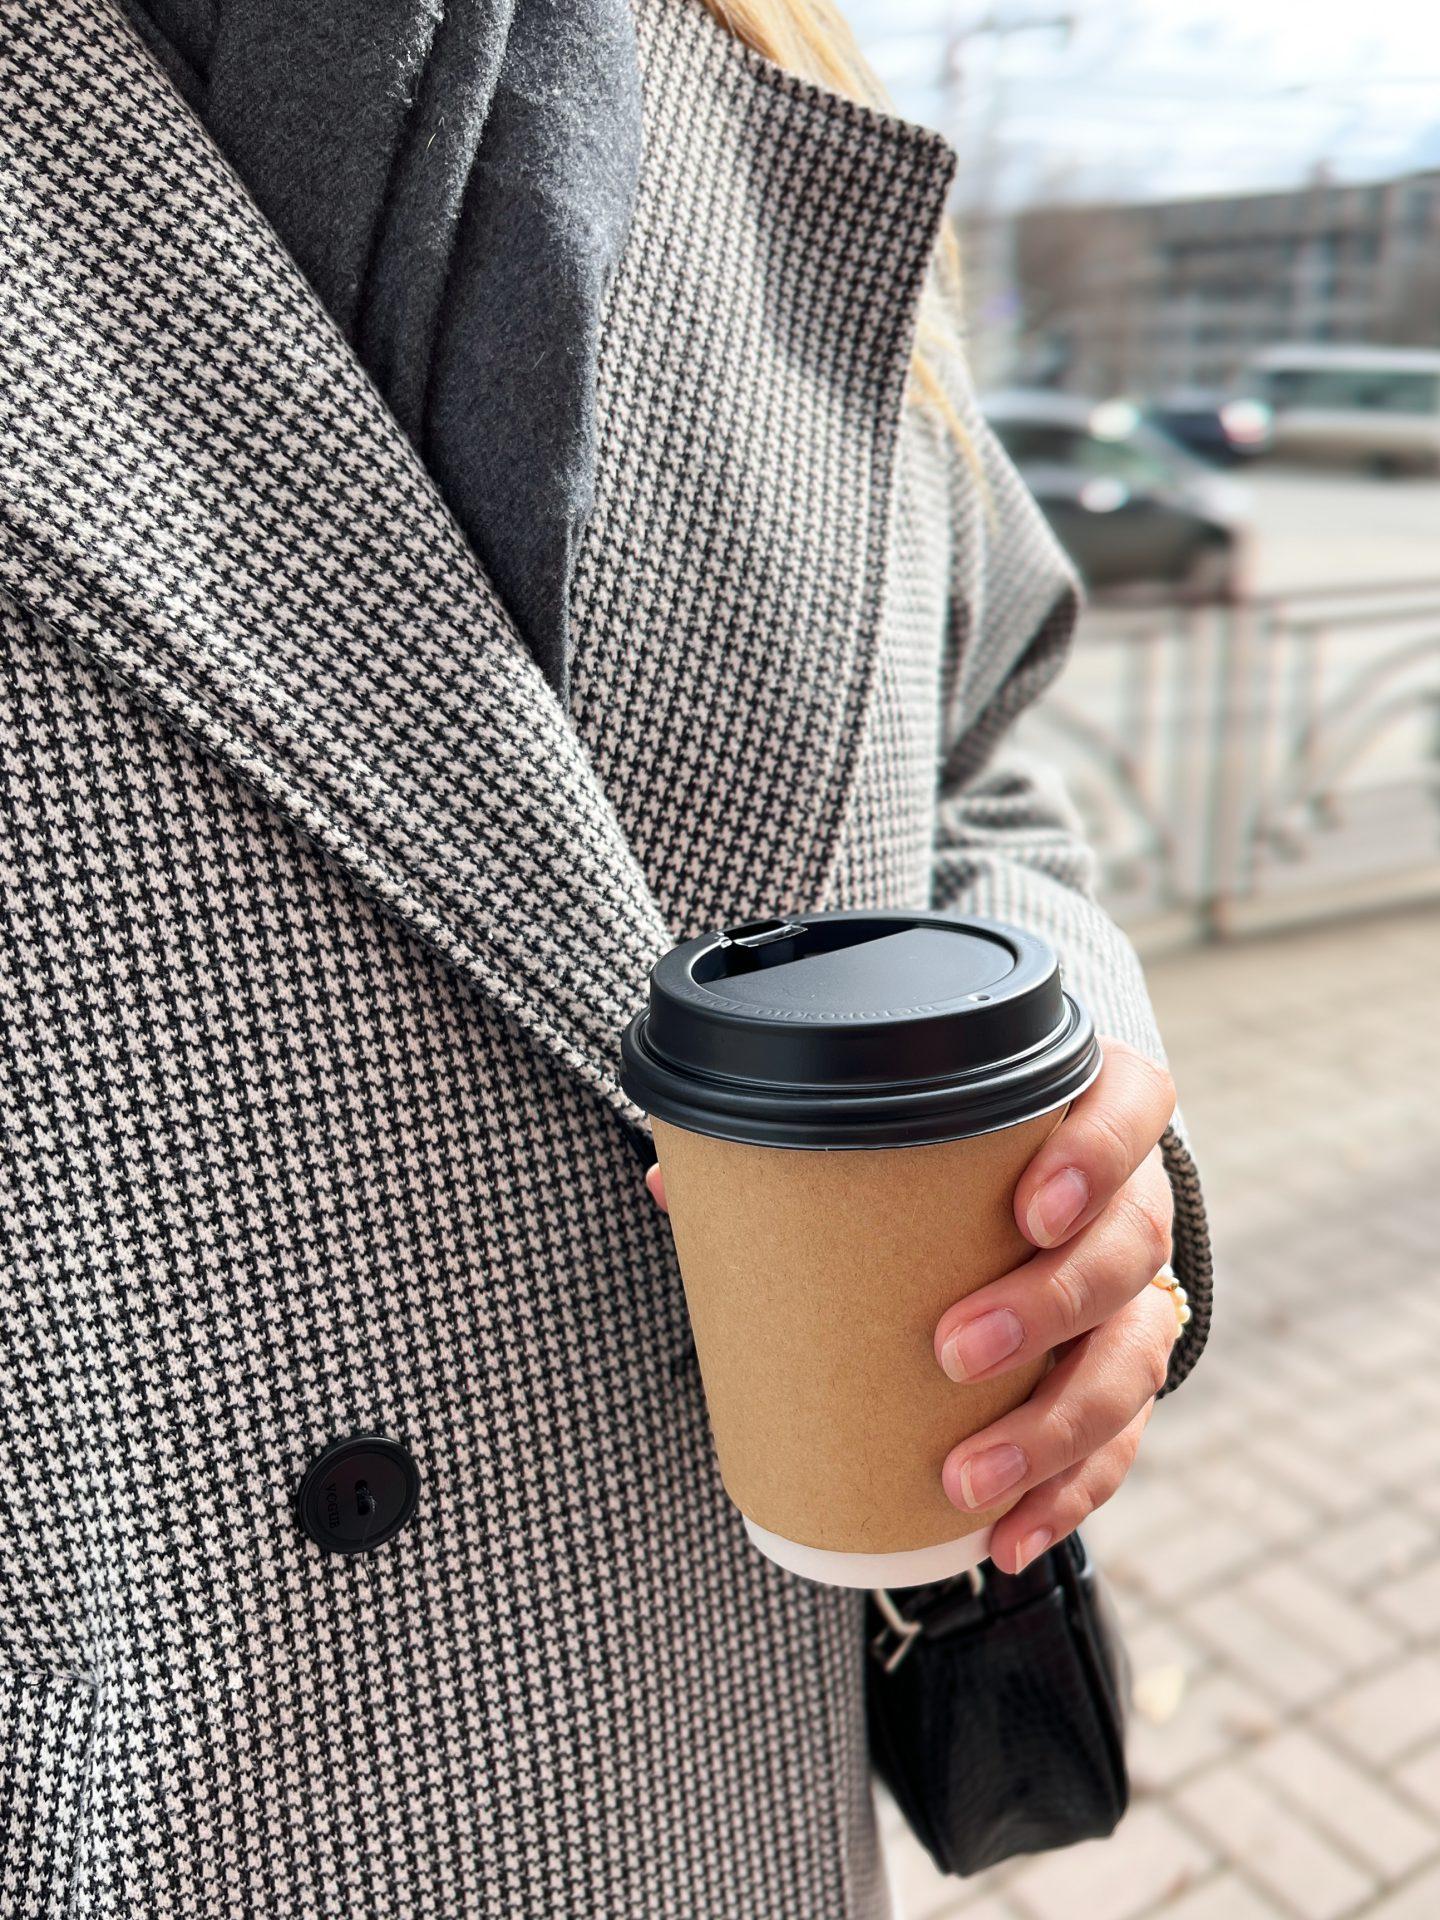 dłoń kobiety trzymająca kubek ekologiczny z kawą